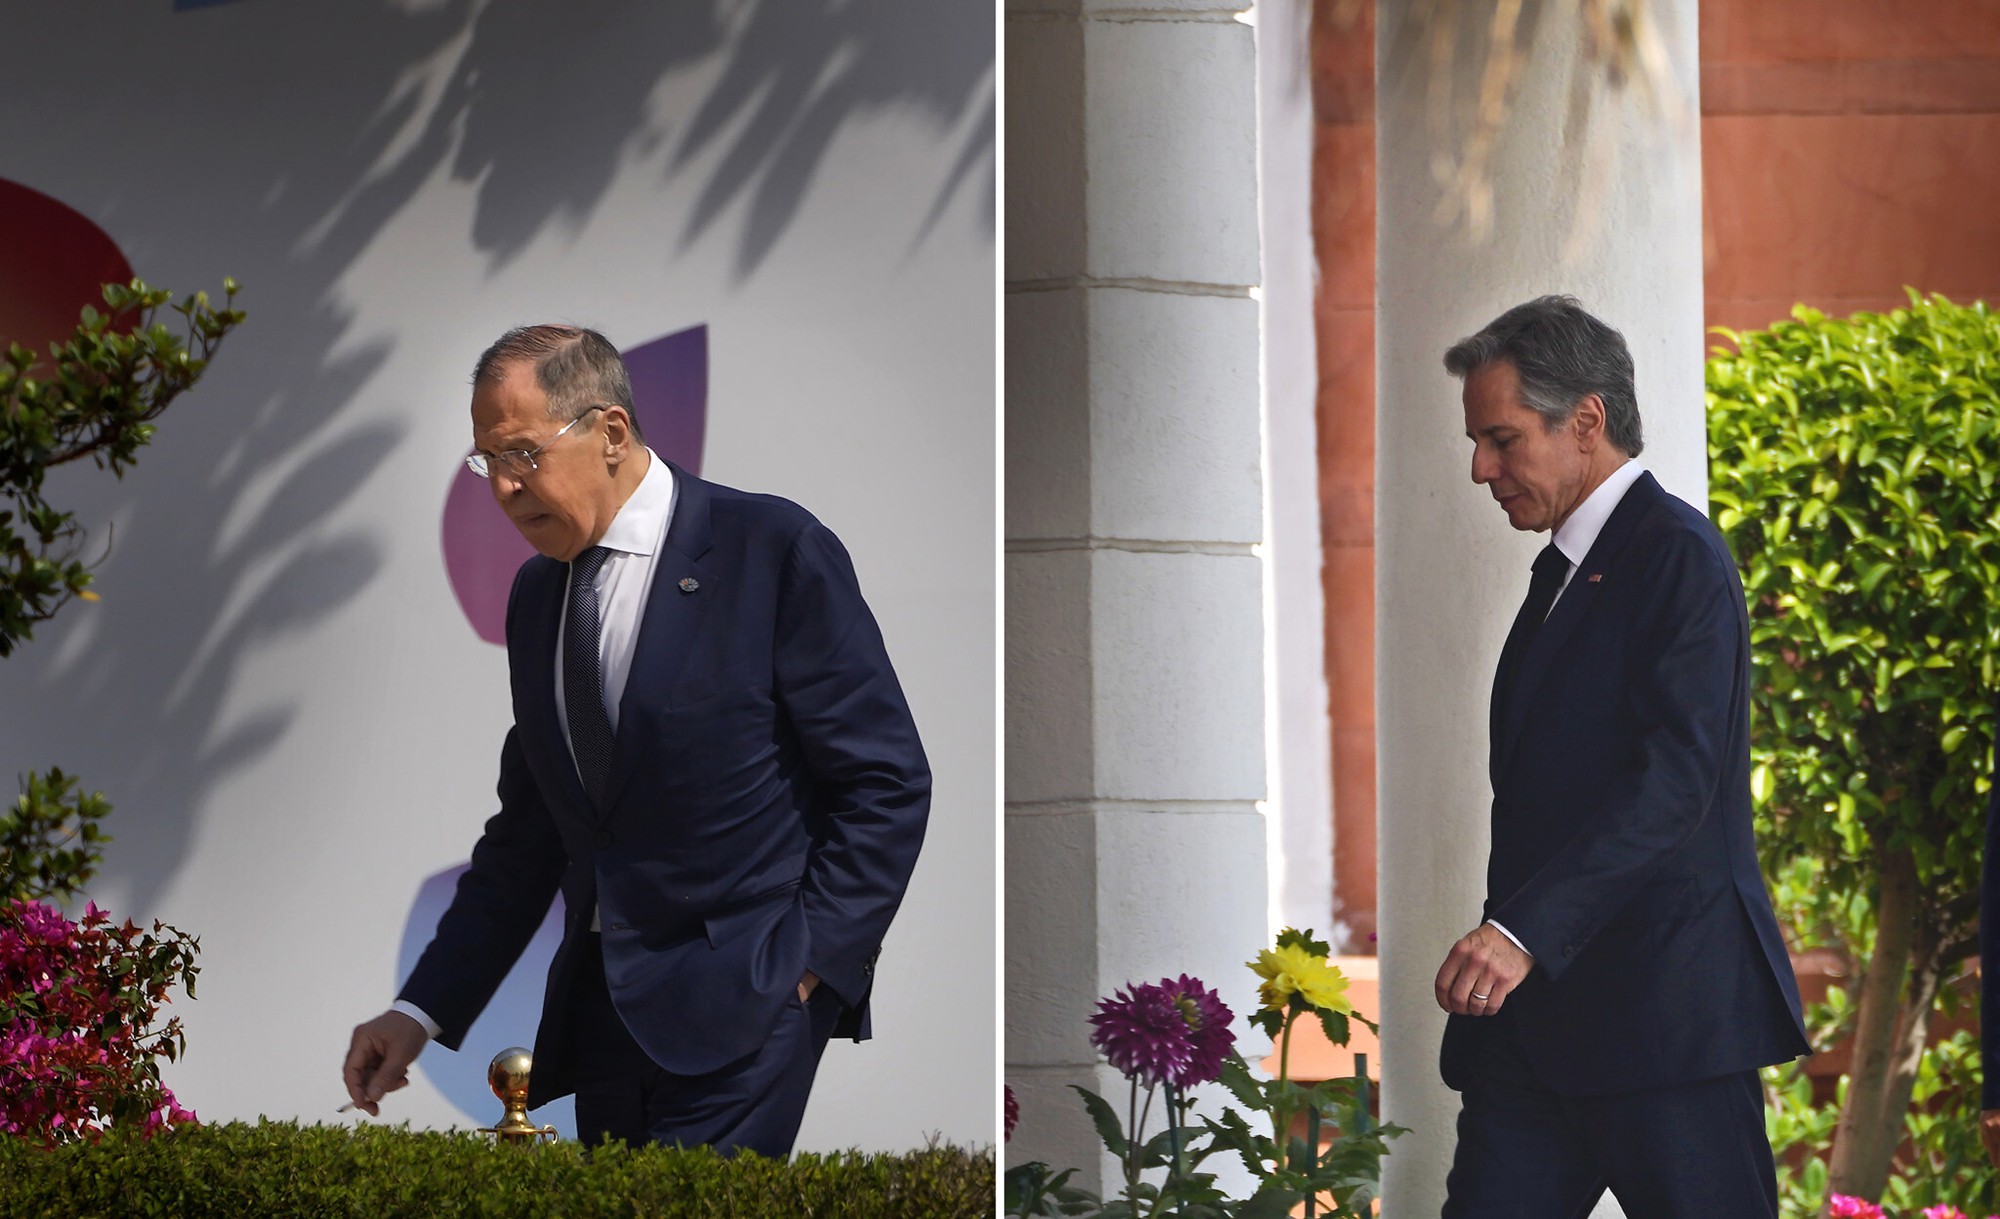 Ngoại trưởng Mỹ Blinken và người đồng cấp Lavrov gặp nhau lần đầu kể từ khi xung đột Ukraine nổ ra - Ảnh 1.